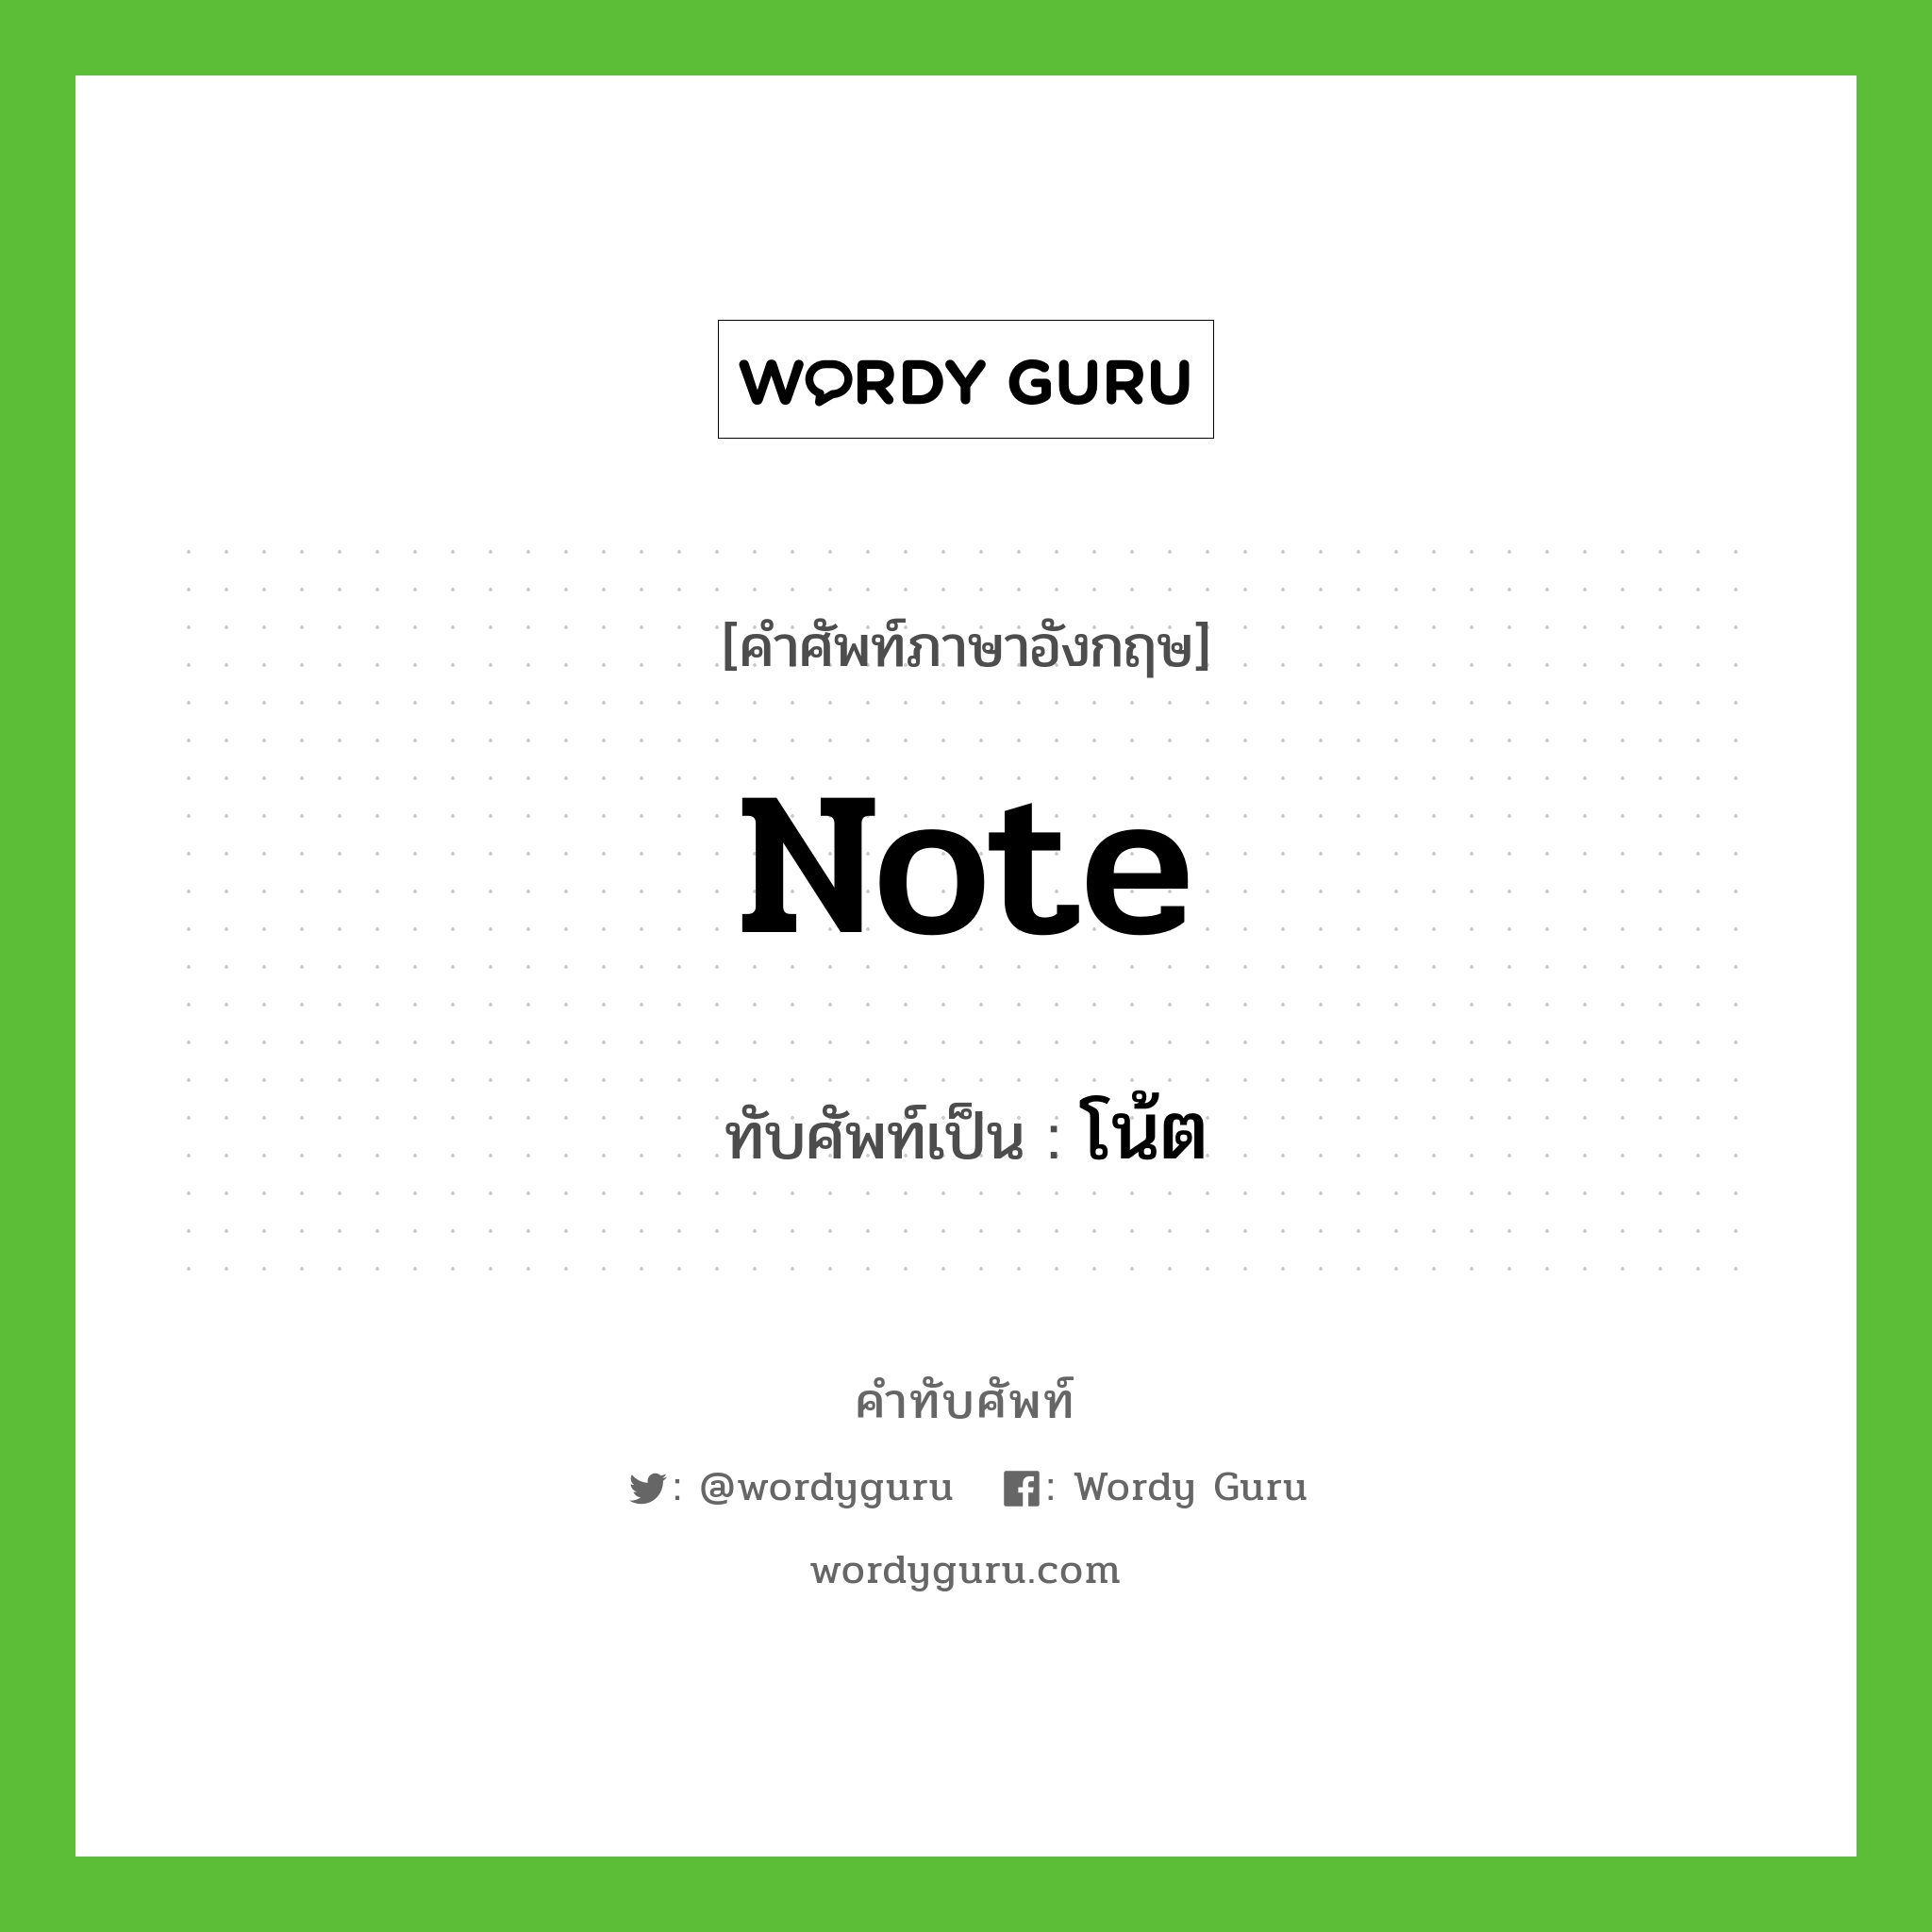 note เขียนเป็นคำไทยว่าอะไร?, คำศัพท์ภาษาอังกฤษ note ทับศัพท์เป็น โน้ต